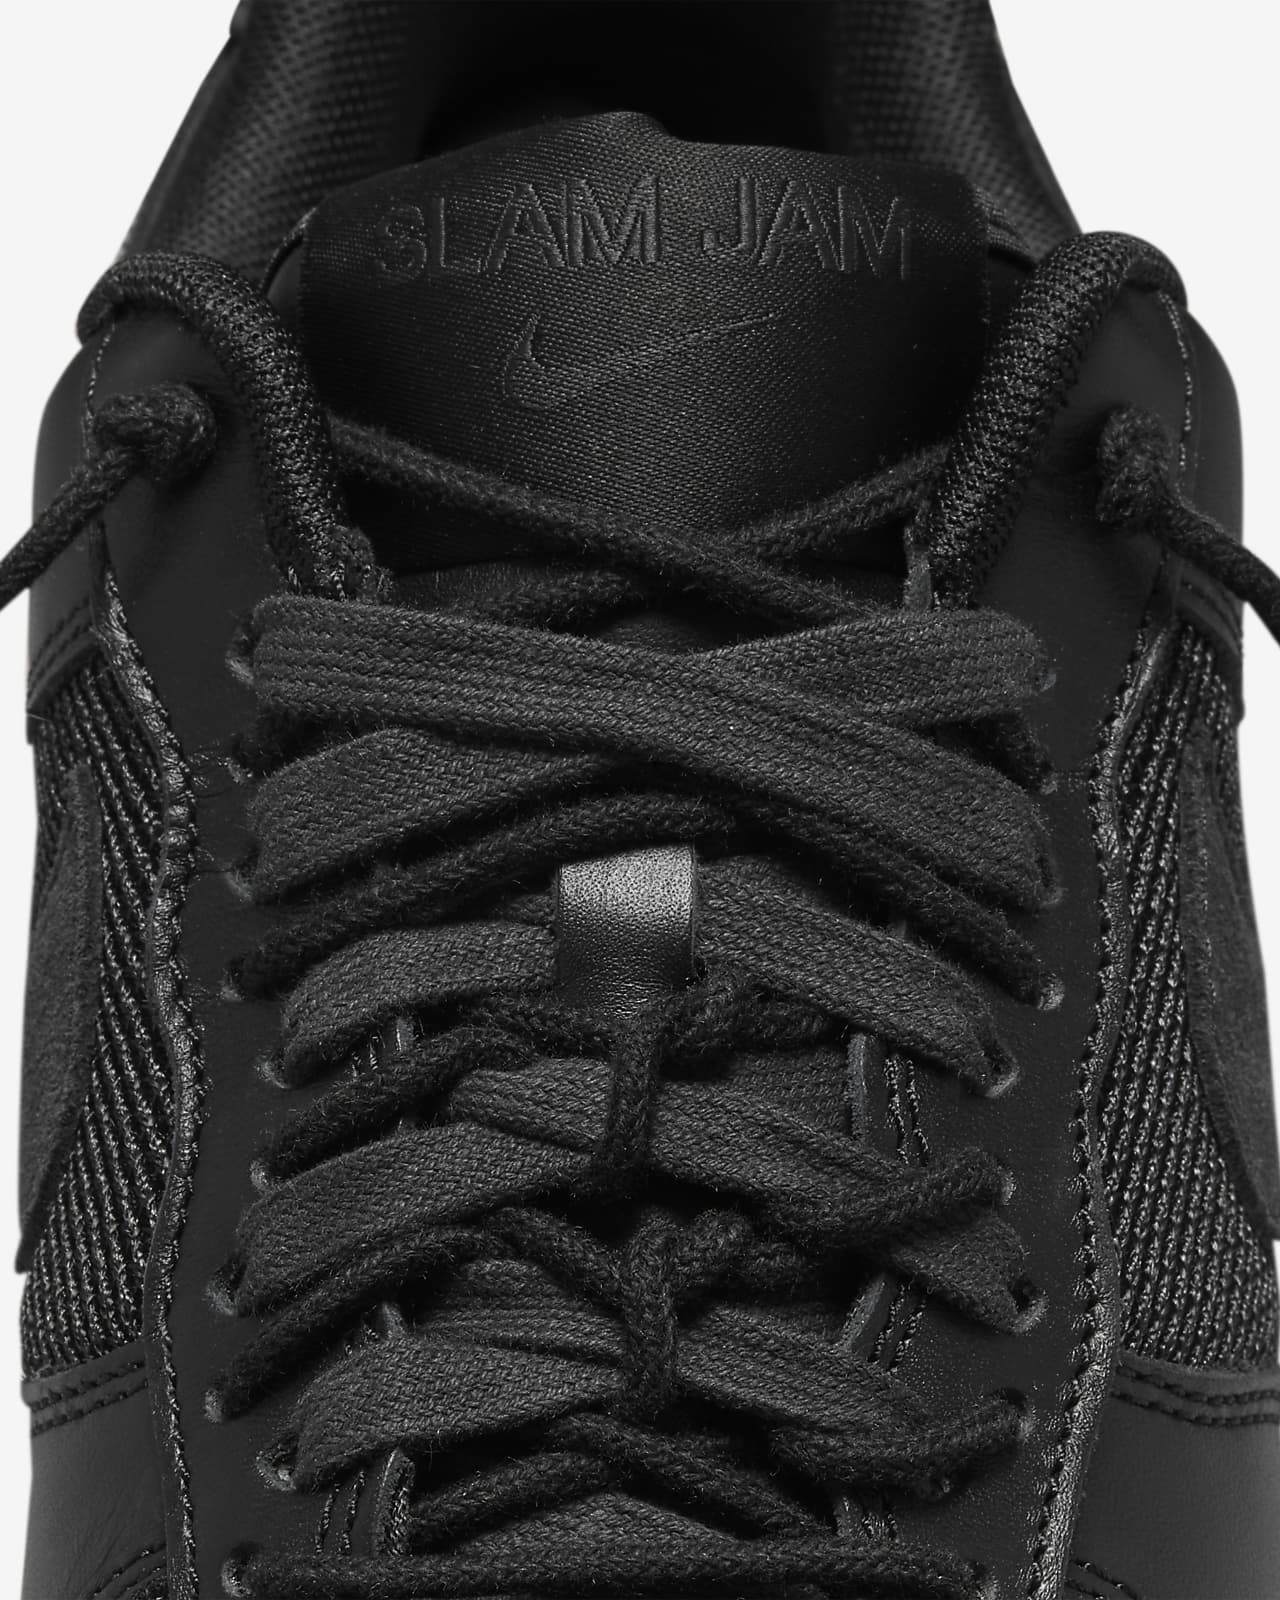 Nike Air Force 1 Low x Slam Jam Men's Shoes. Nike CA